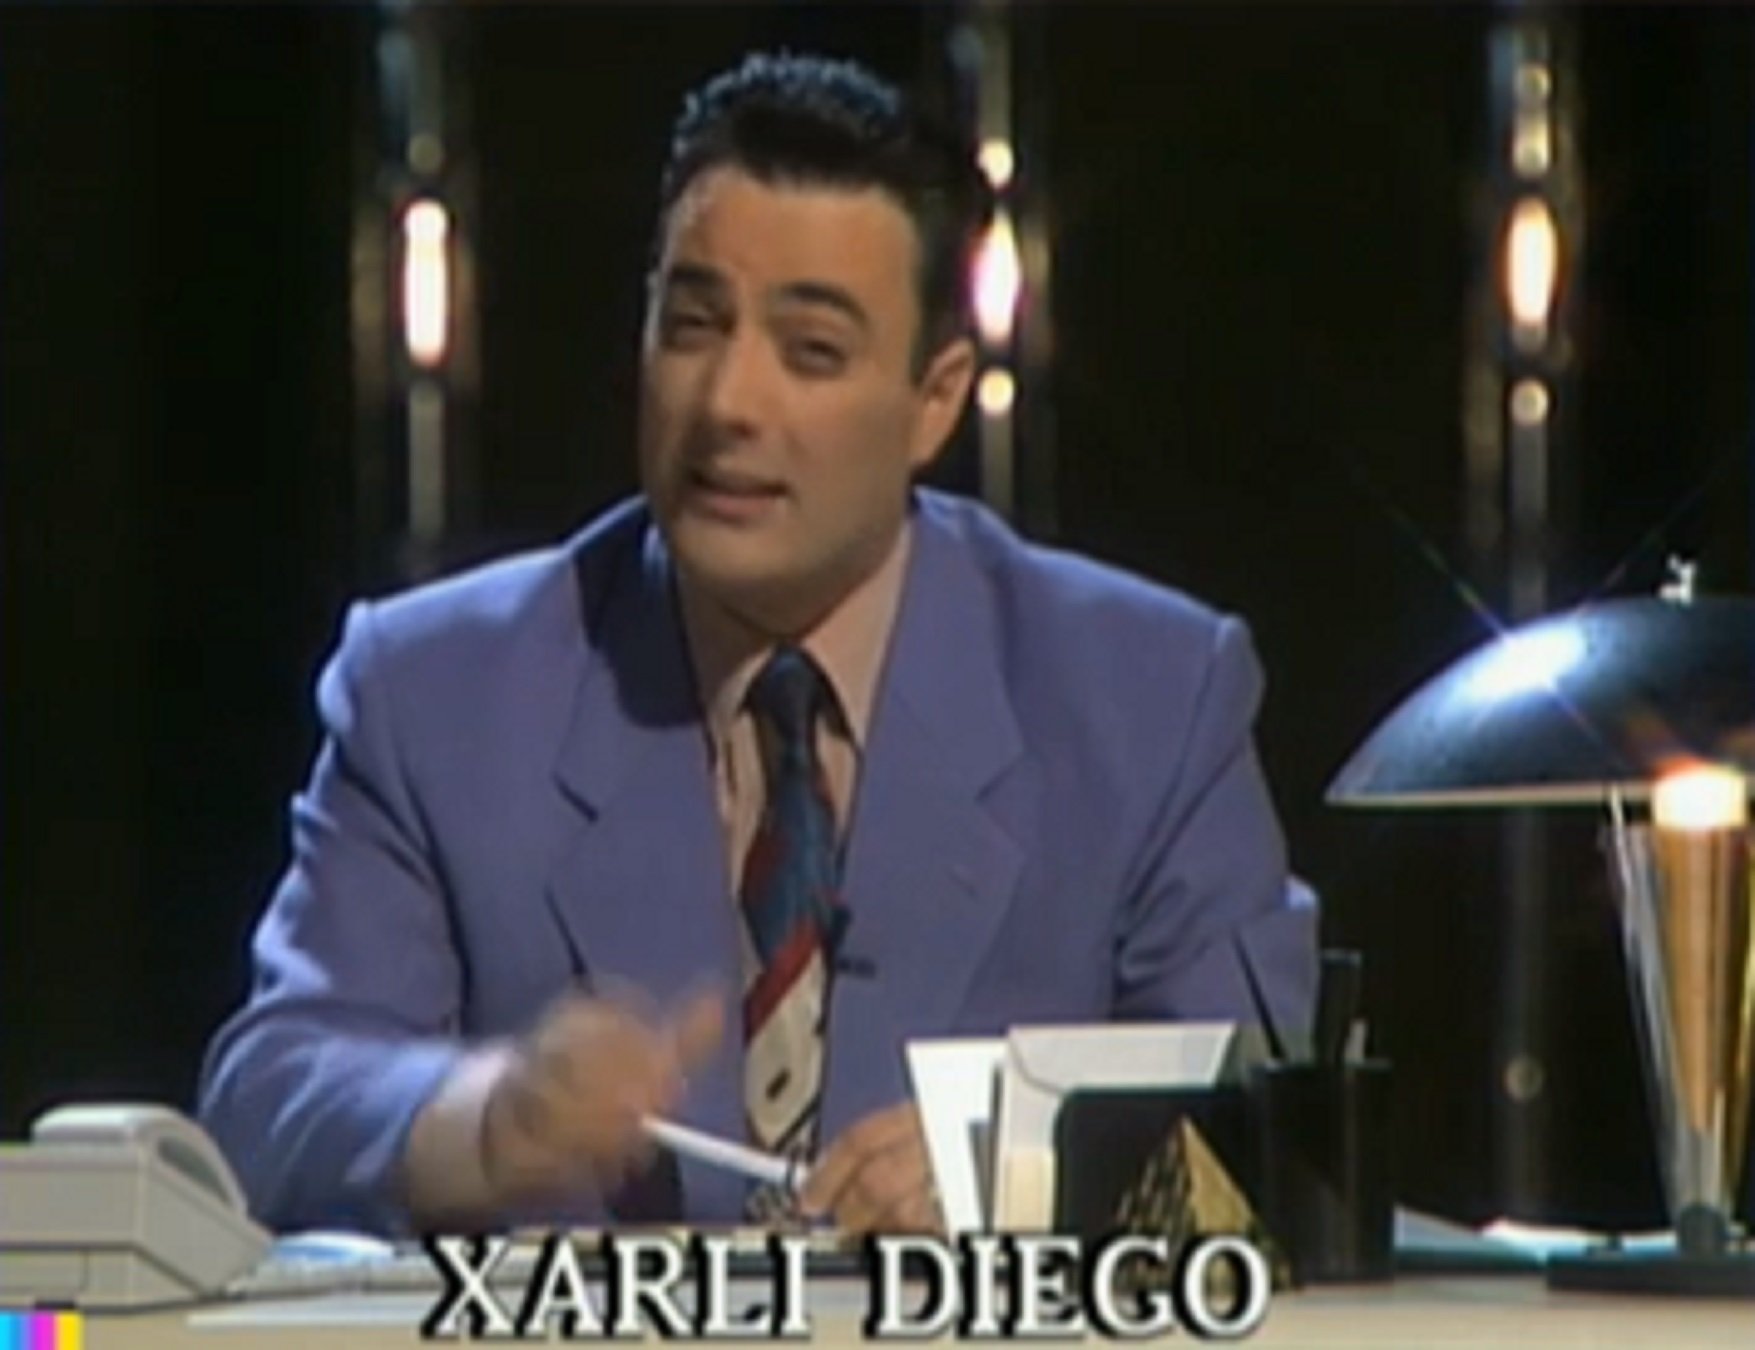 L'emocionant retorn de Xarli Diego a TV3, 30 anys després